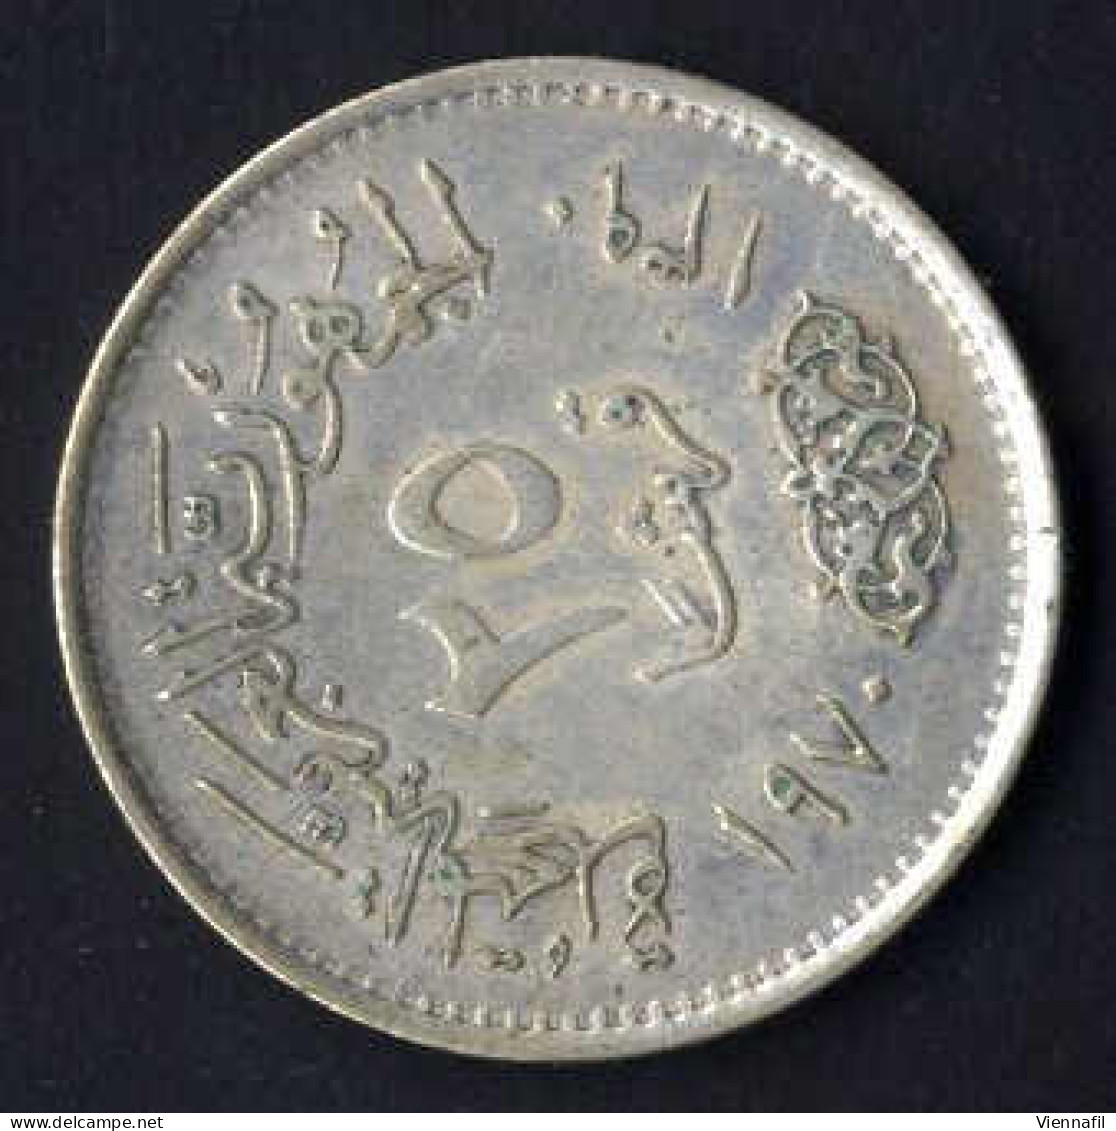 25 Piaster Silber, J1390AH 1970 Nasser, KM 422, Y 134, Vorzüglich - Aegypten